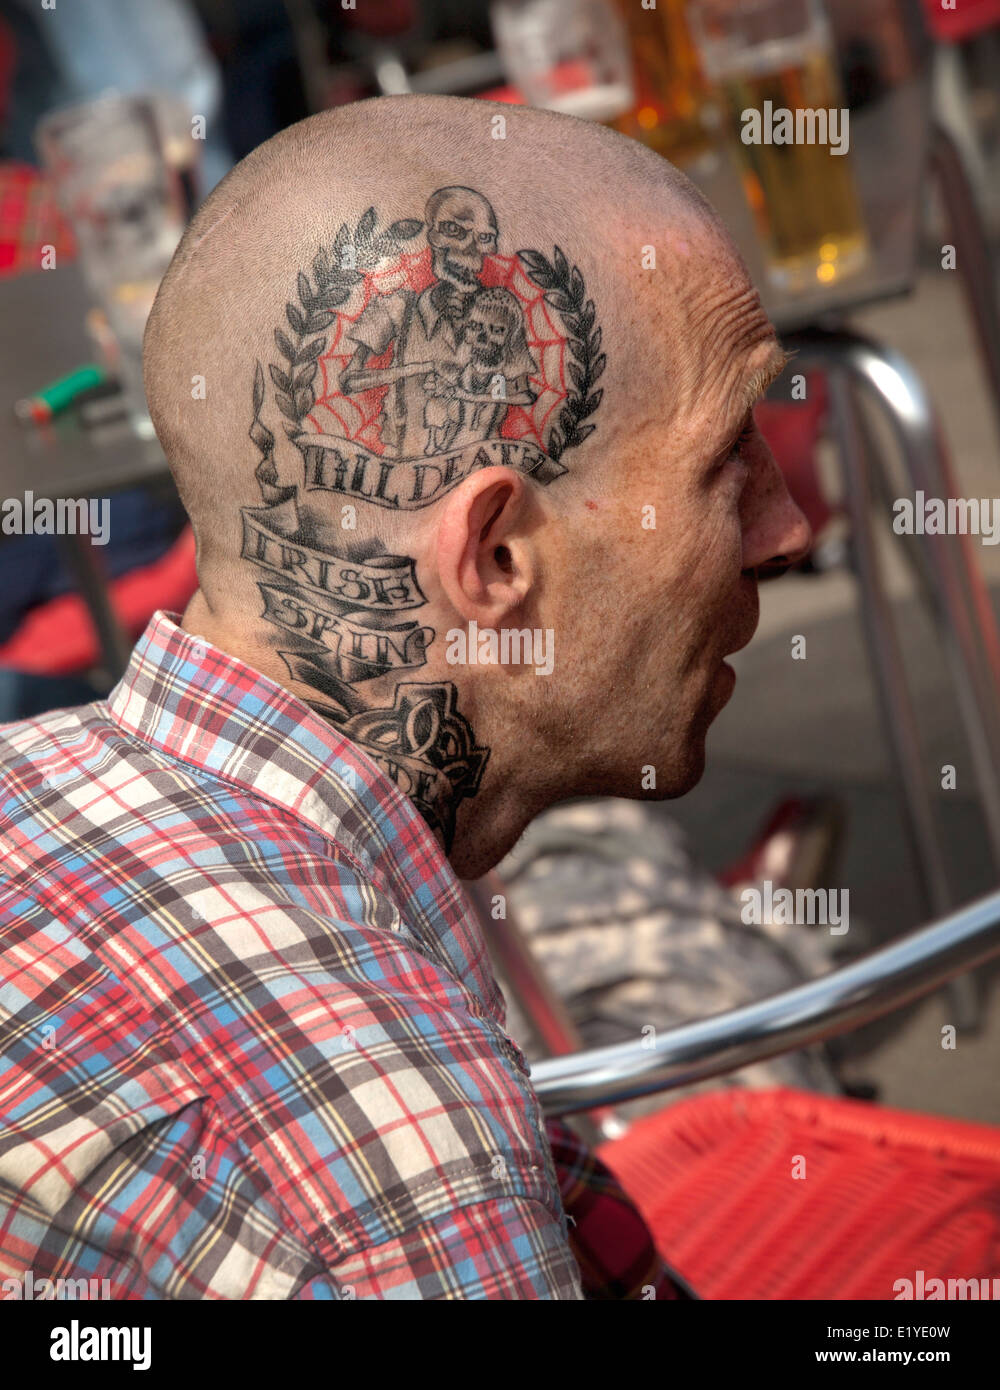 skinhead face tattoos